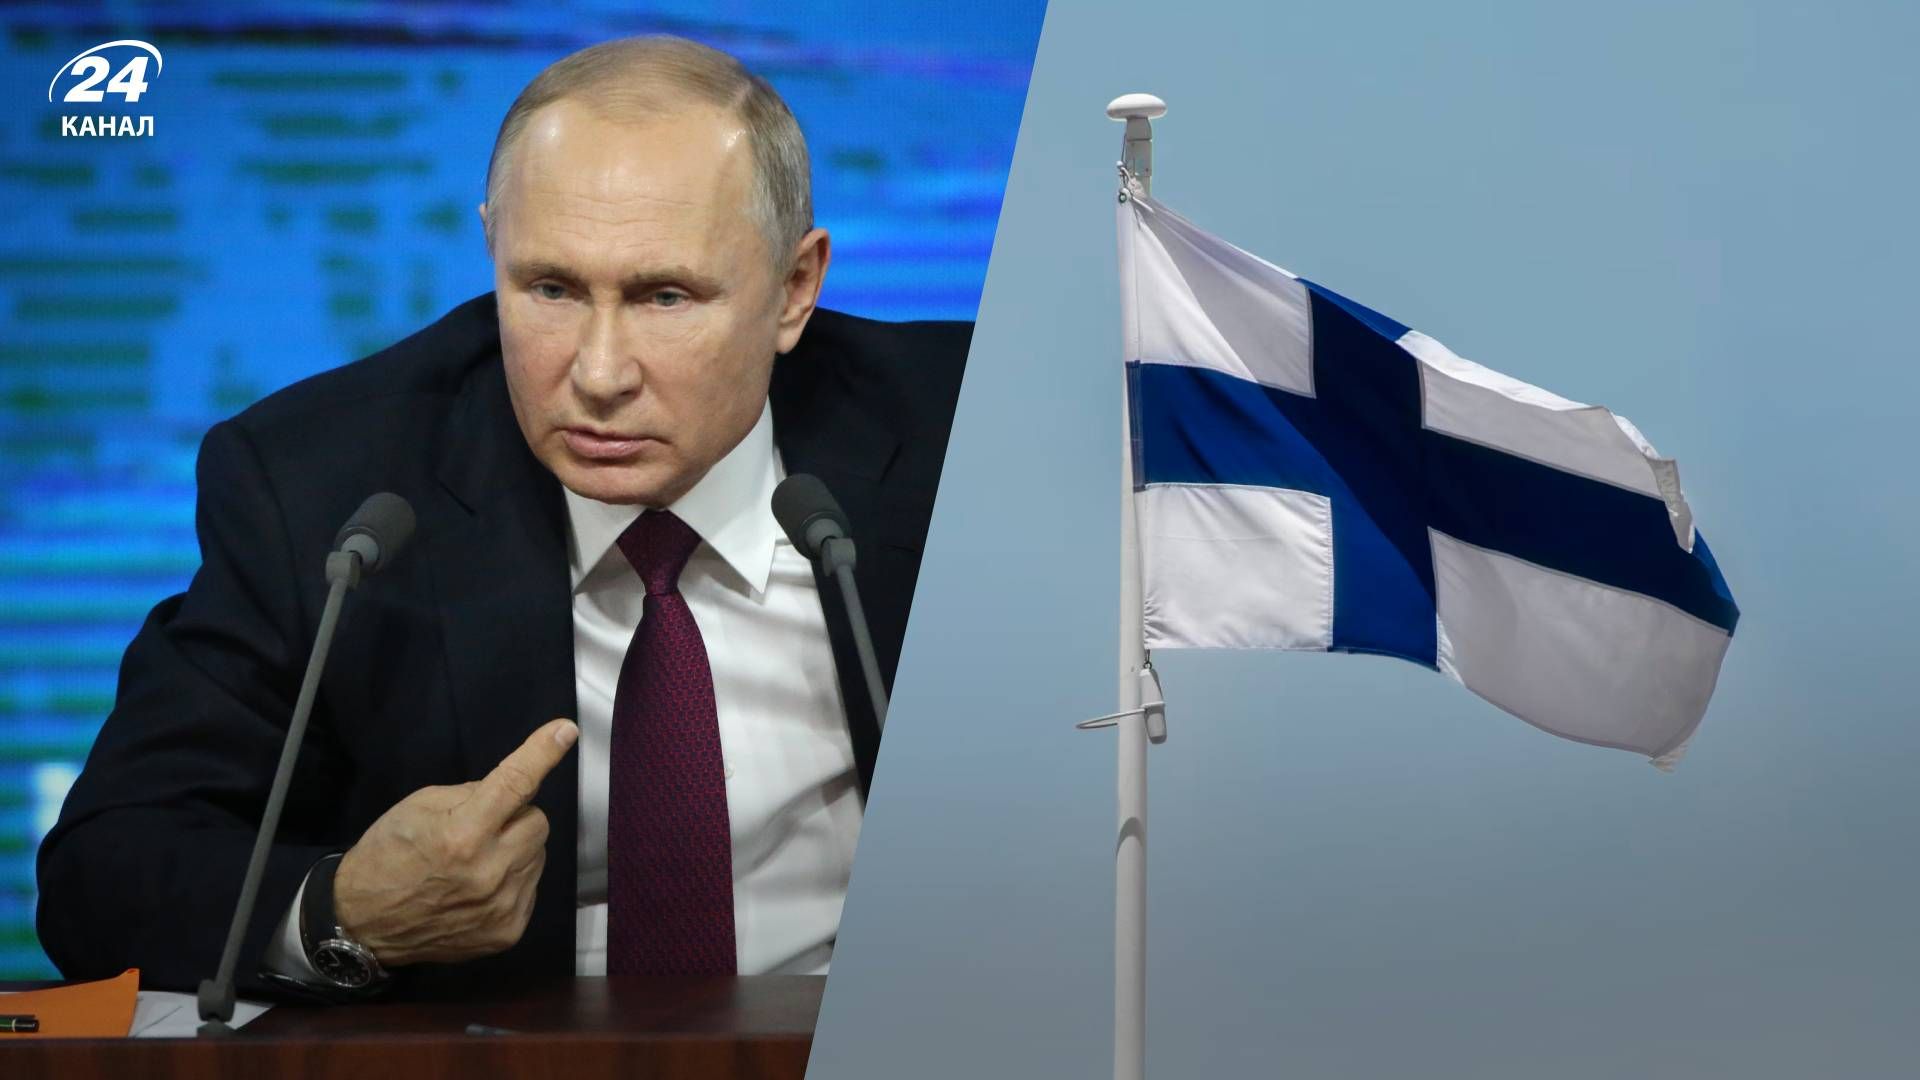 Кандидати у президенти Фінляндії посперечались, чи відповідатимуть на дзвінок Путіна - 24 Канал